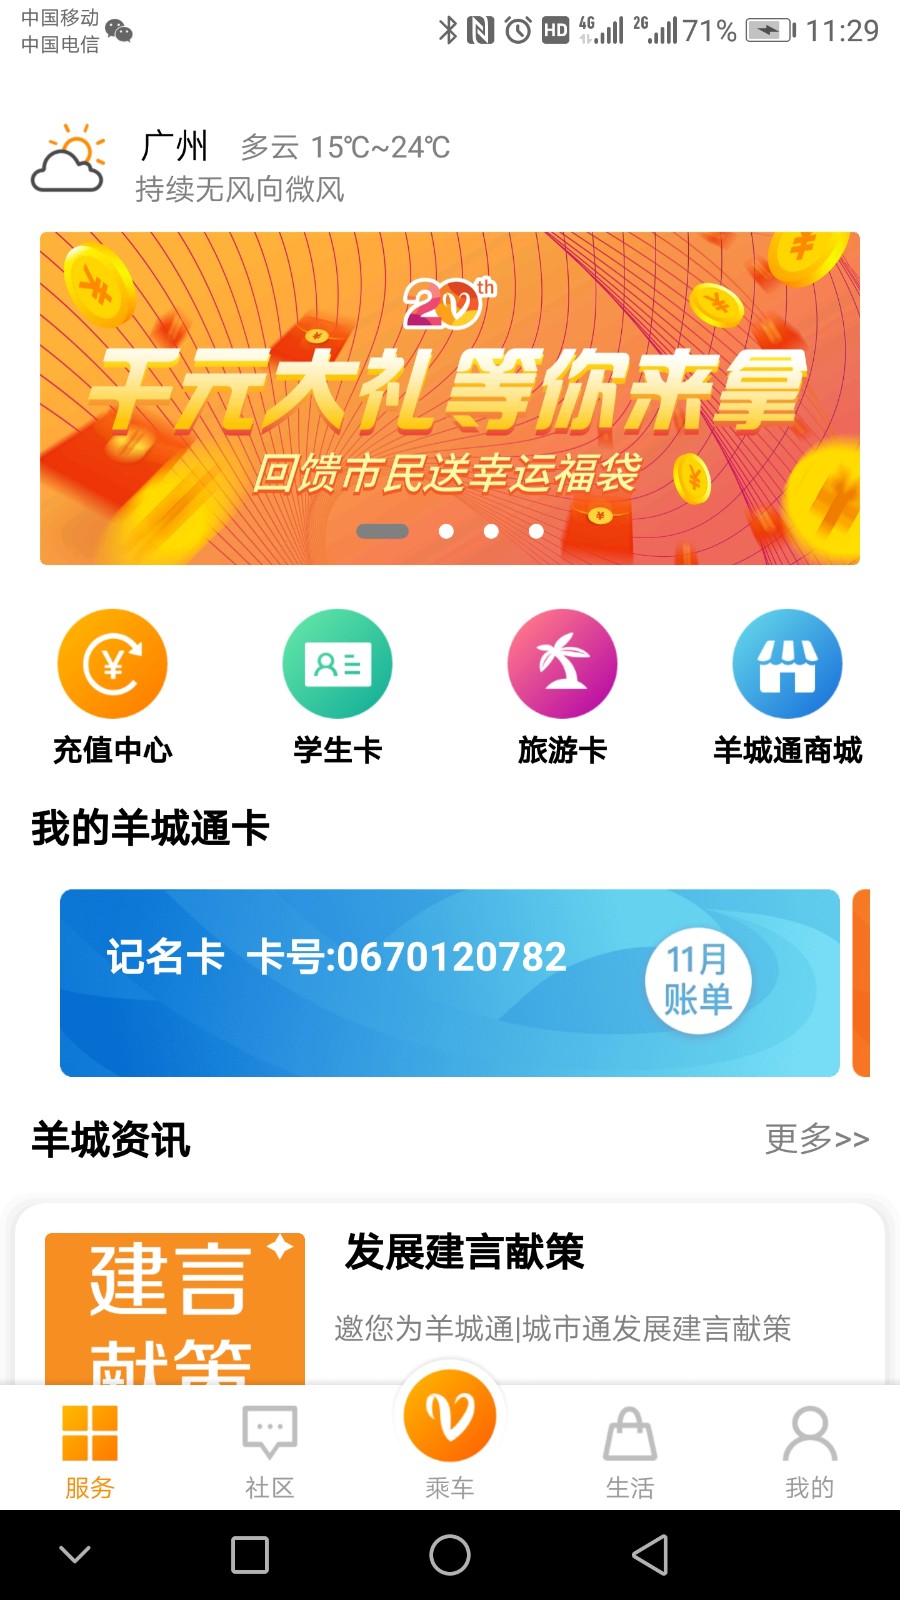 广州羊城通iphone版 v8.5.4 官方ios手机版1